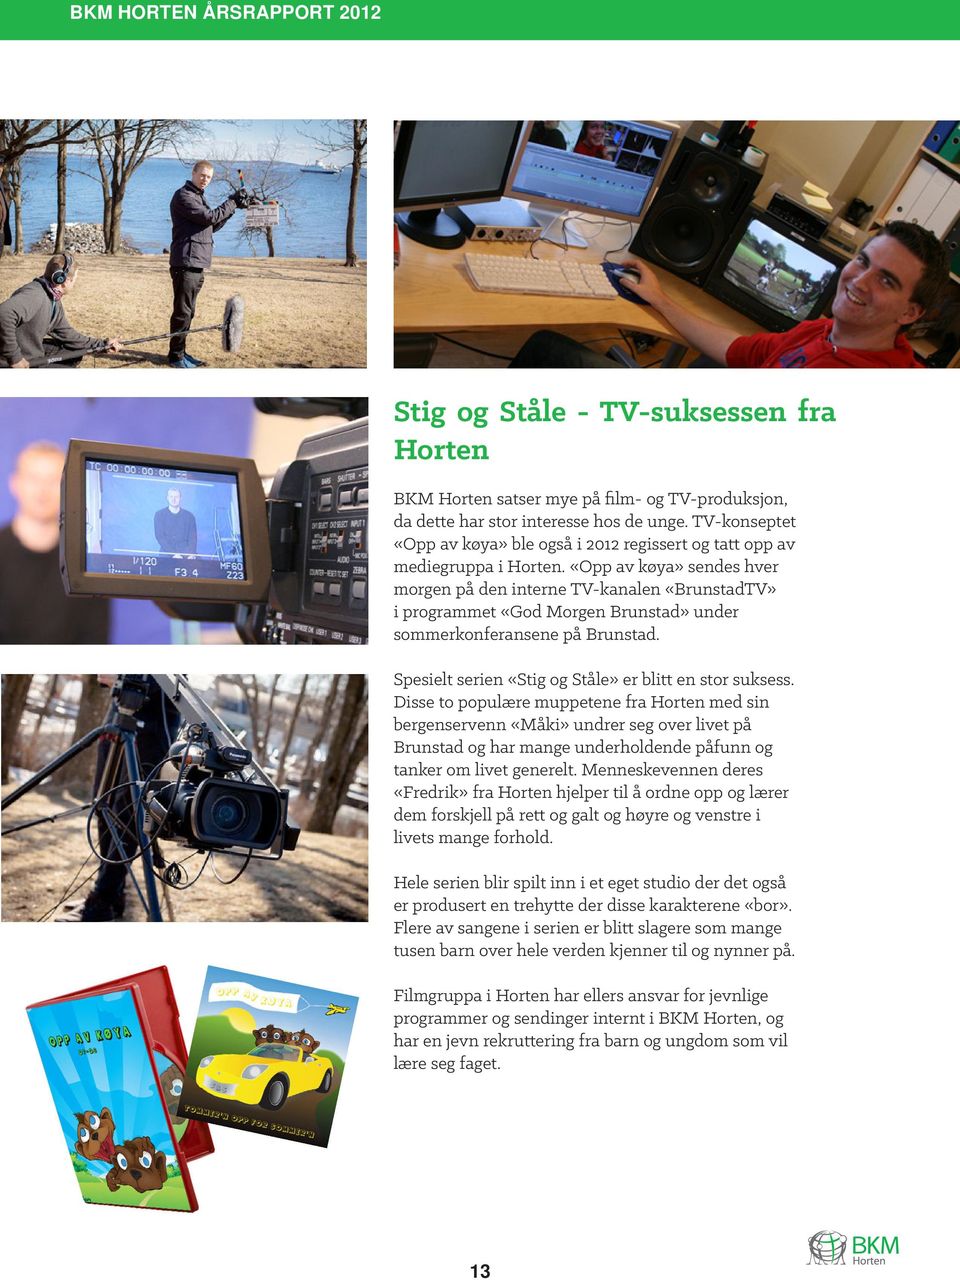 «Opp av køya» sendes hver morgen på den interne TV-kanalen «BrunstadTV» i programmet «God Morgen Brunstad» under sommerkonferansene på Brunstad.